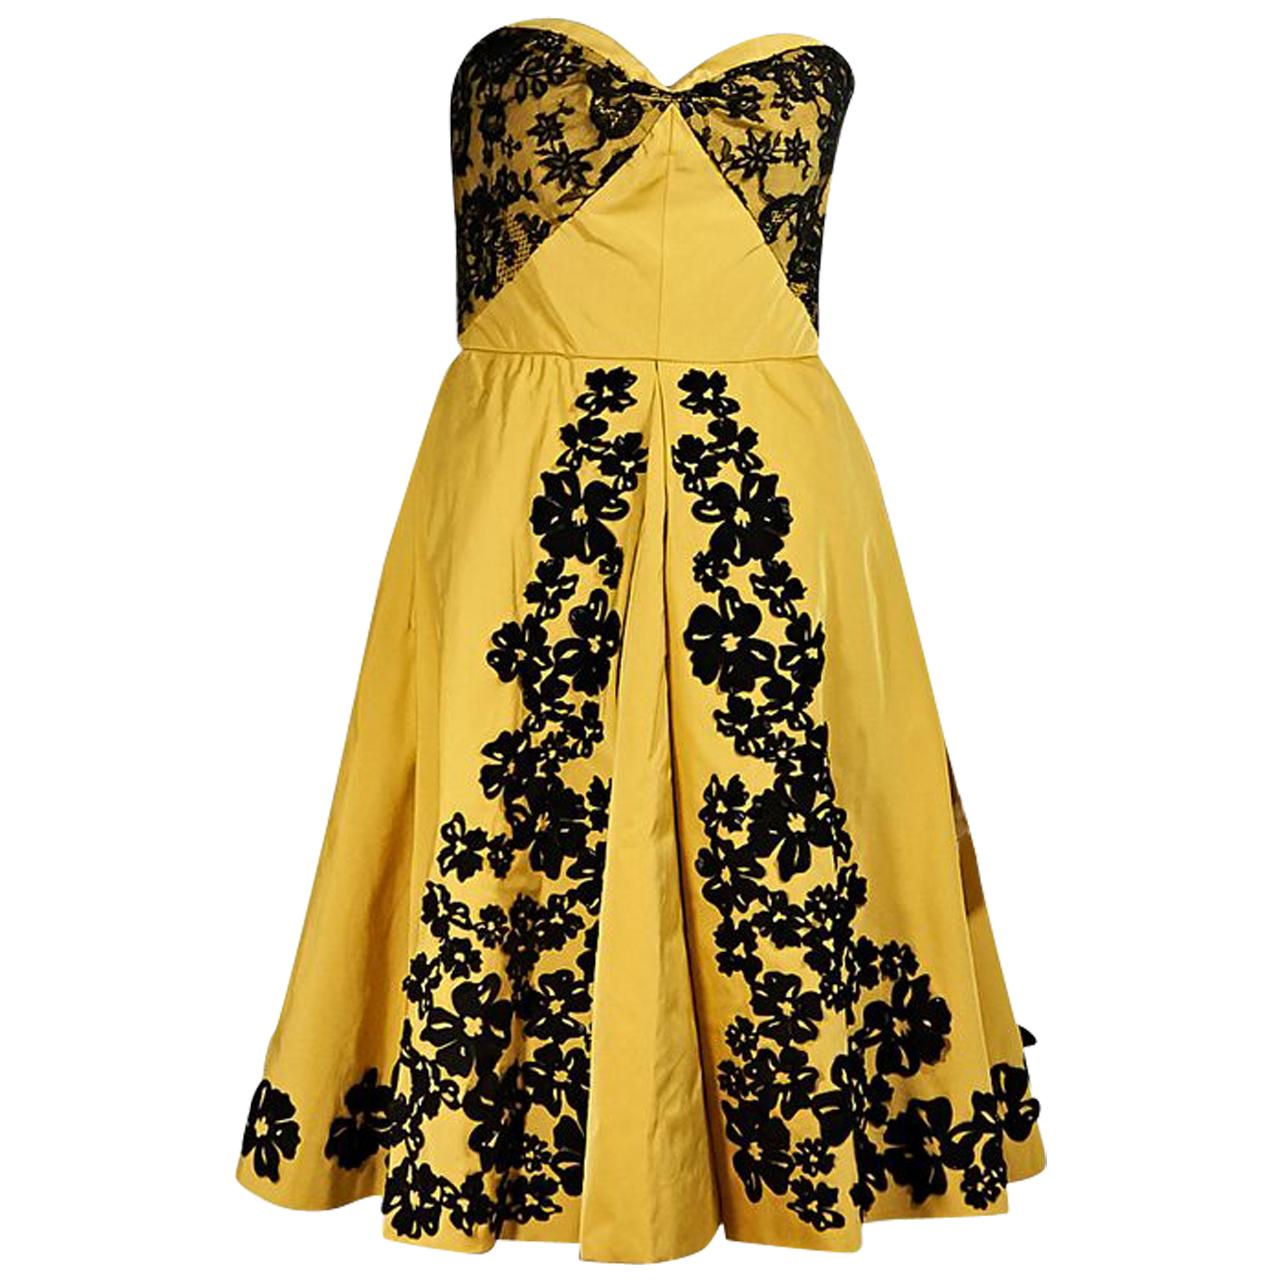 Yellow & Black Oscar de la Renta Strapless Dress